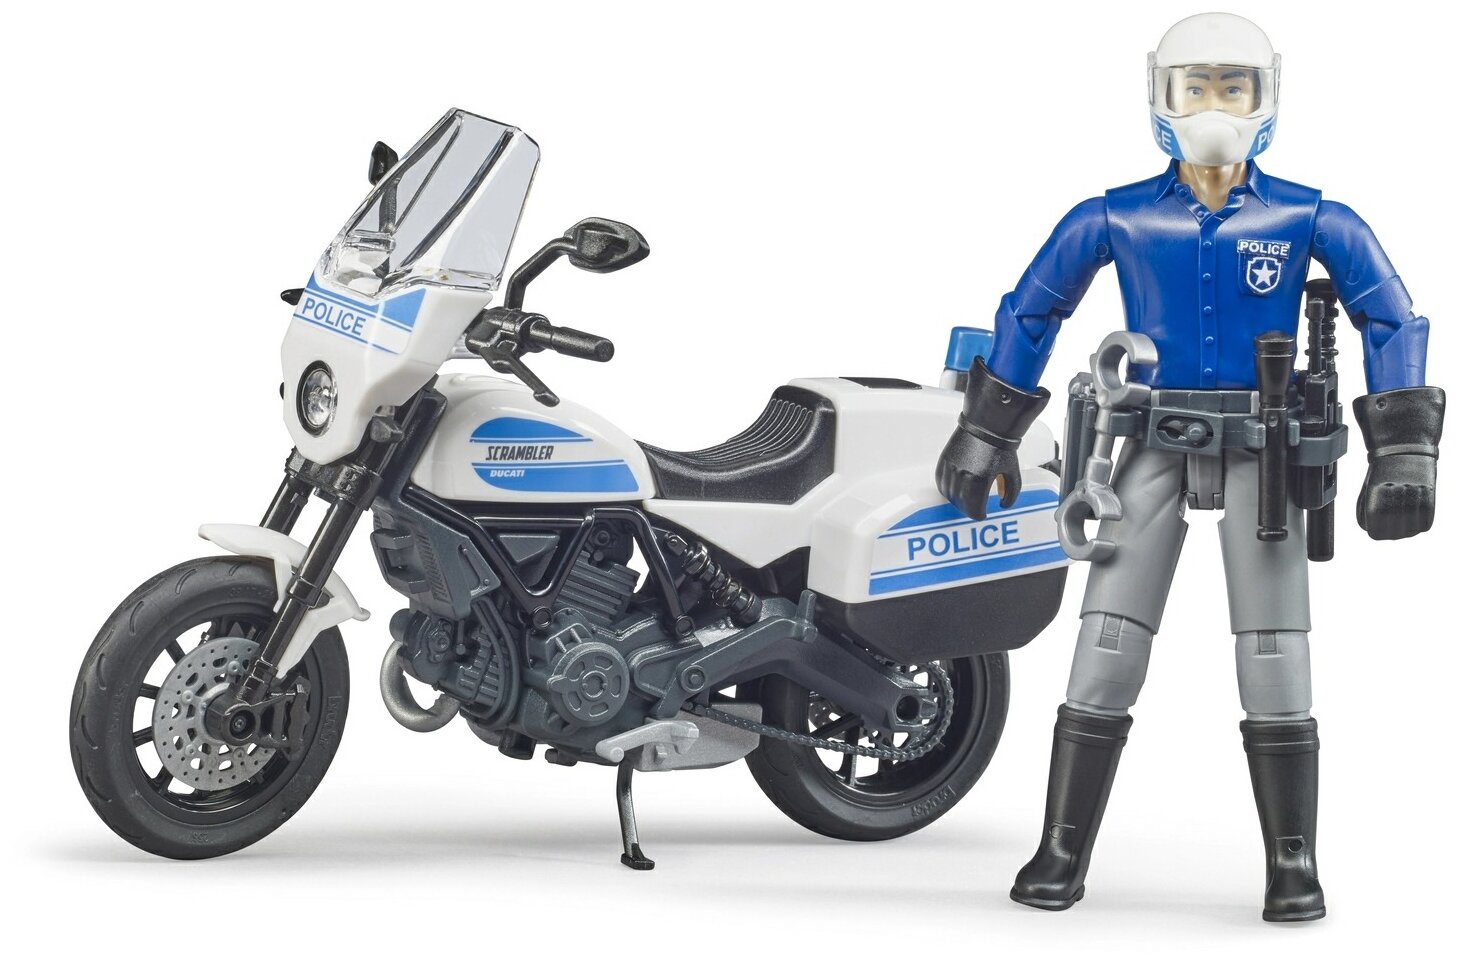 Мотоцикл Scrambler Ducati с фигуркой полицейского 62-731 Bruder - фото 1